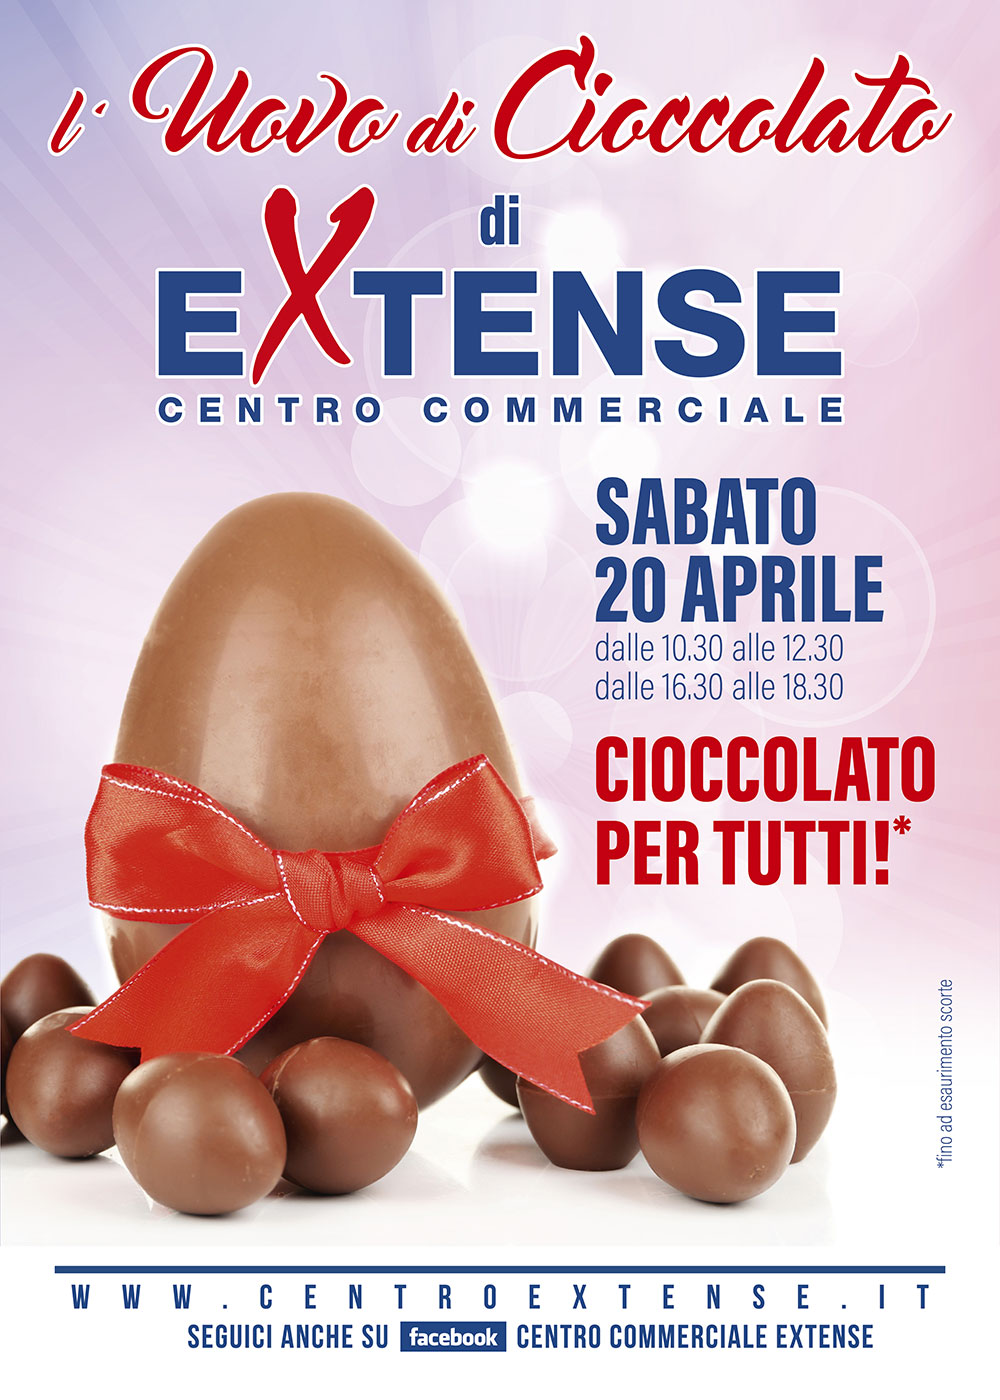 L'uovo di Cioccolato del Centro Commerciale Extense - 20 aprile 2019